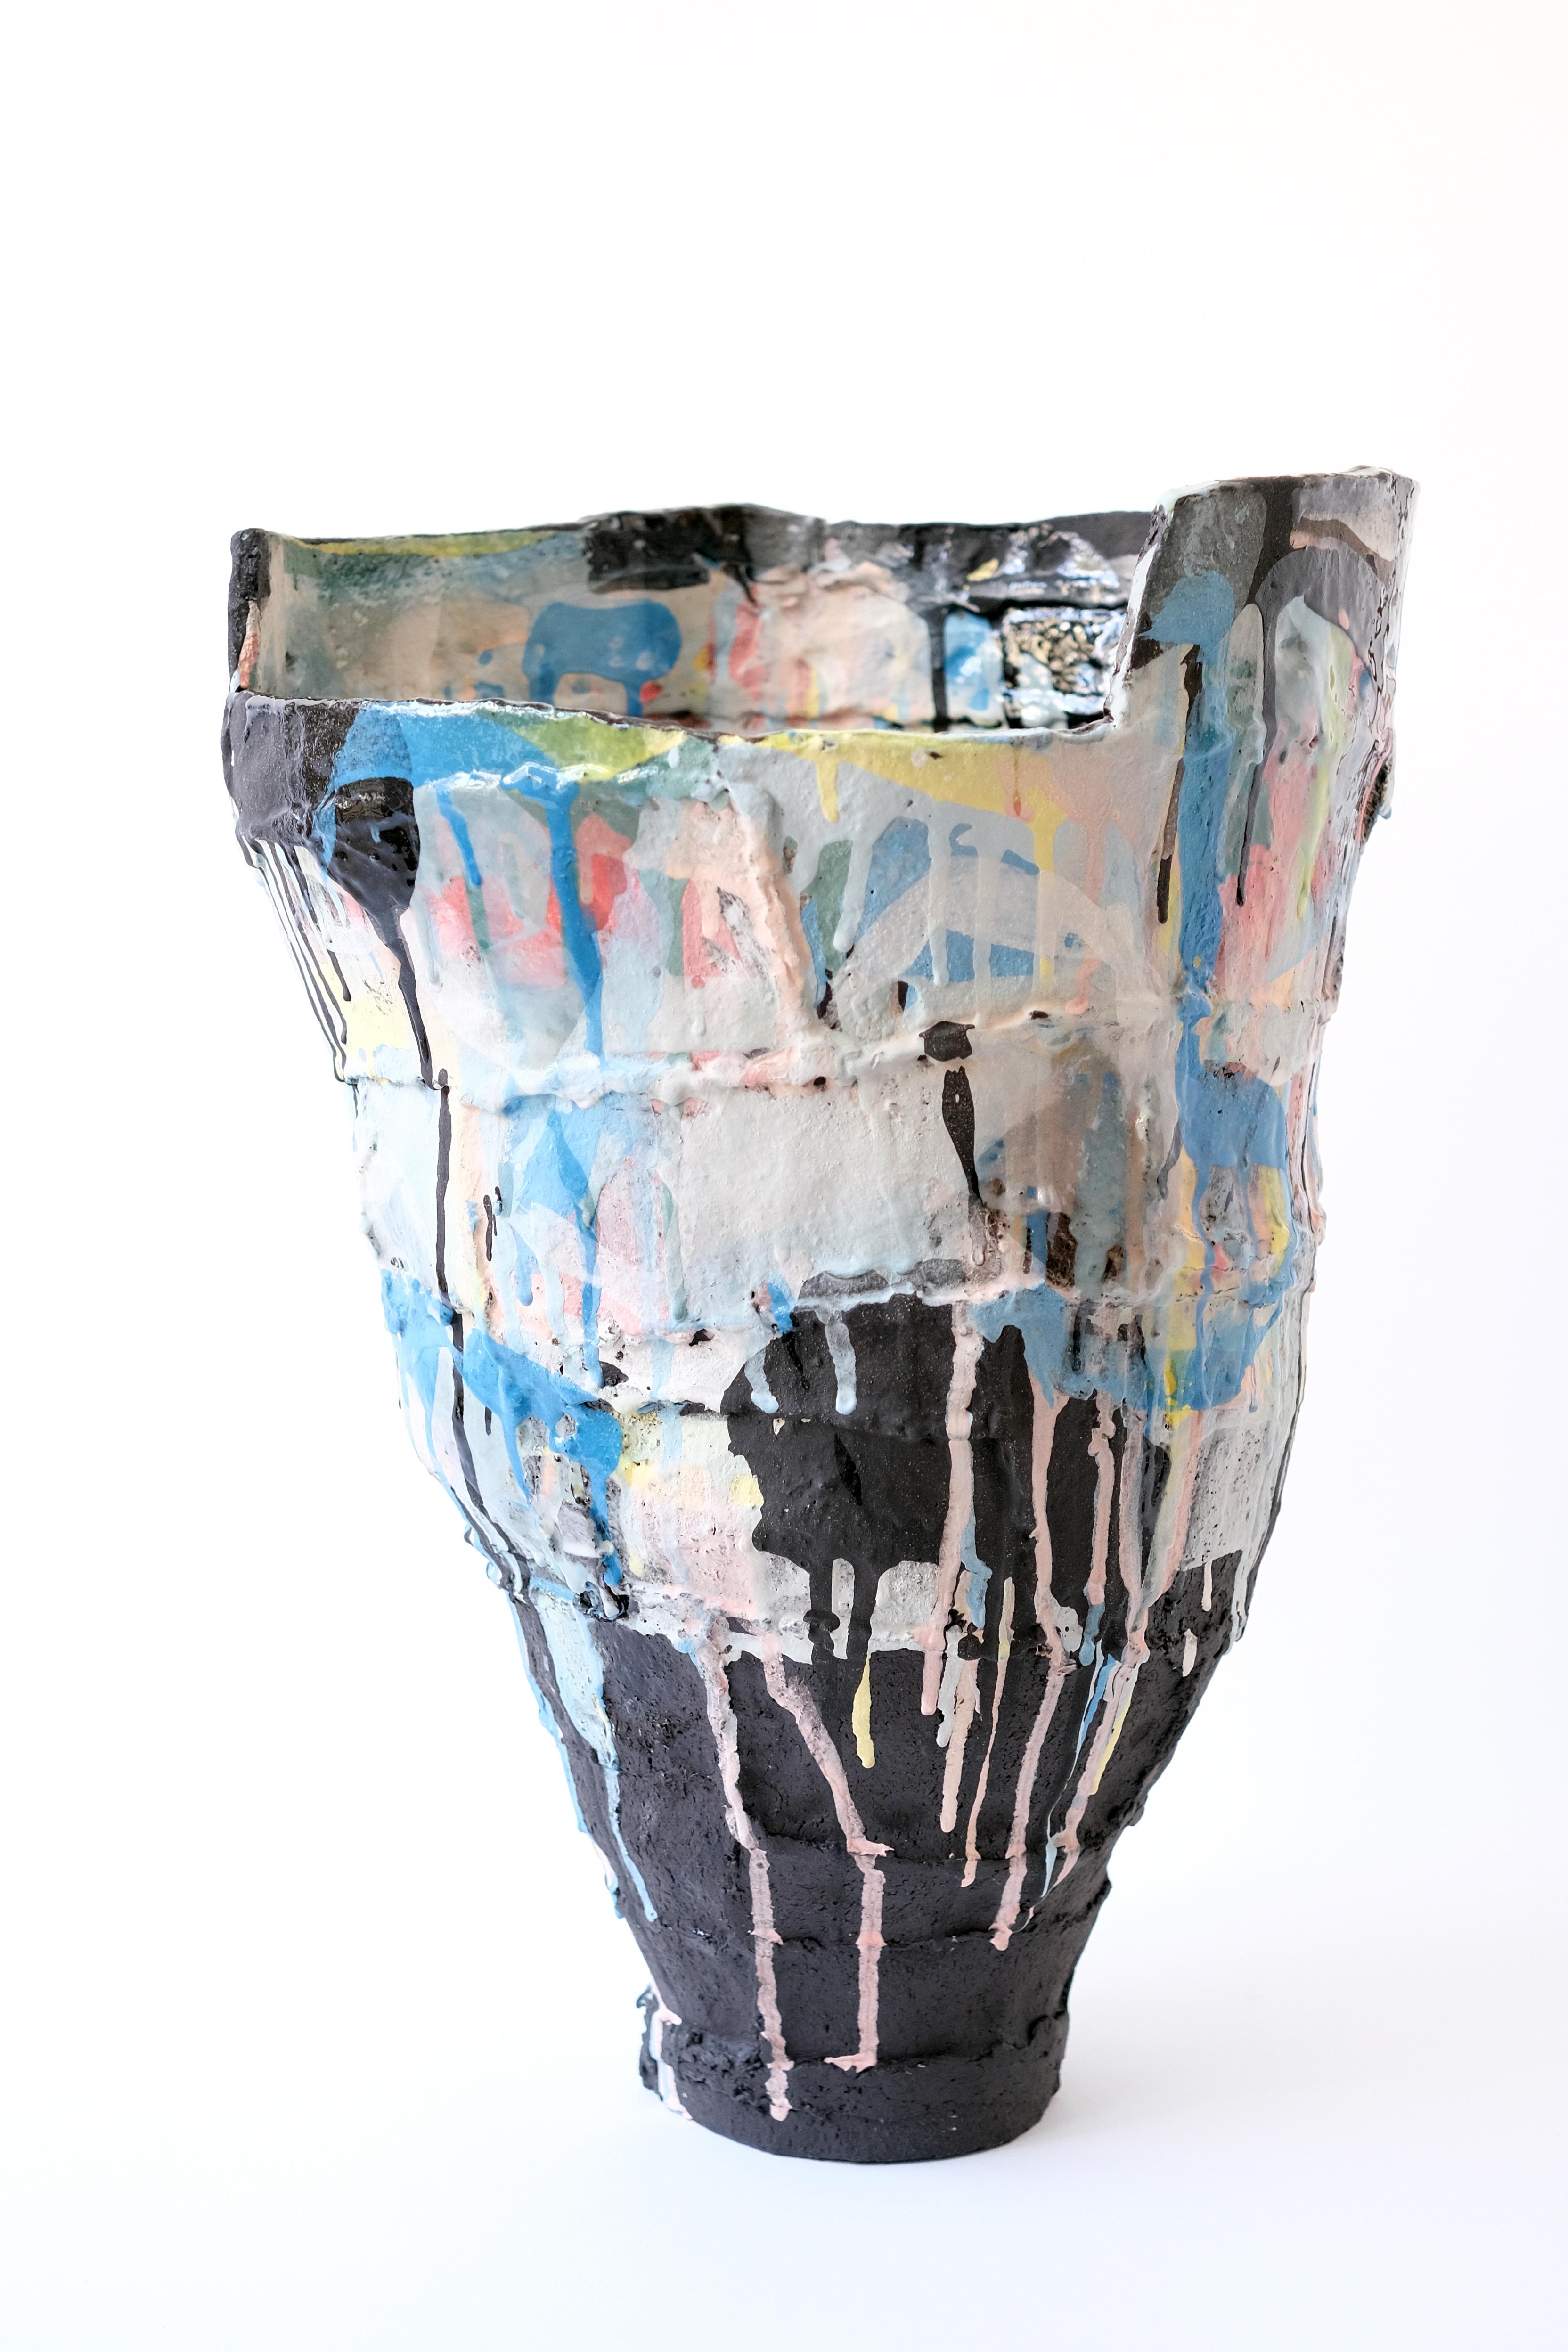 Ardea Cinerea-Vase von Elke Sada
Einzigartiges Stück
Abmessungen: B 31 x T 32 x H 45 cm
MATERIALIEN: schwarzer Rillenton, farbige Schlicker, transparente Glasur.

Das Faszinierende und Auffallende an der Keramikkunst von Elke Sada ist nicht nur